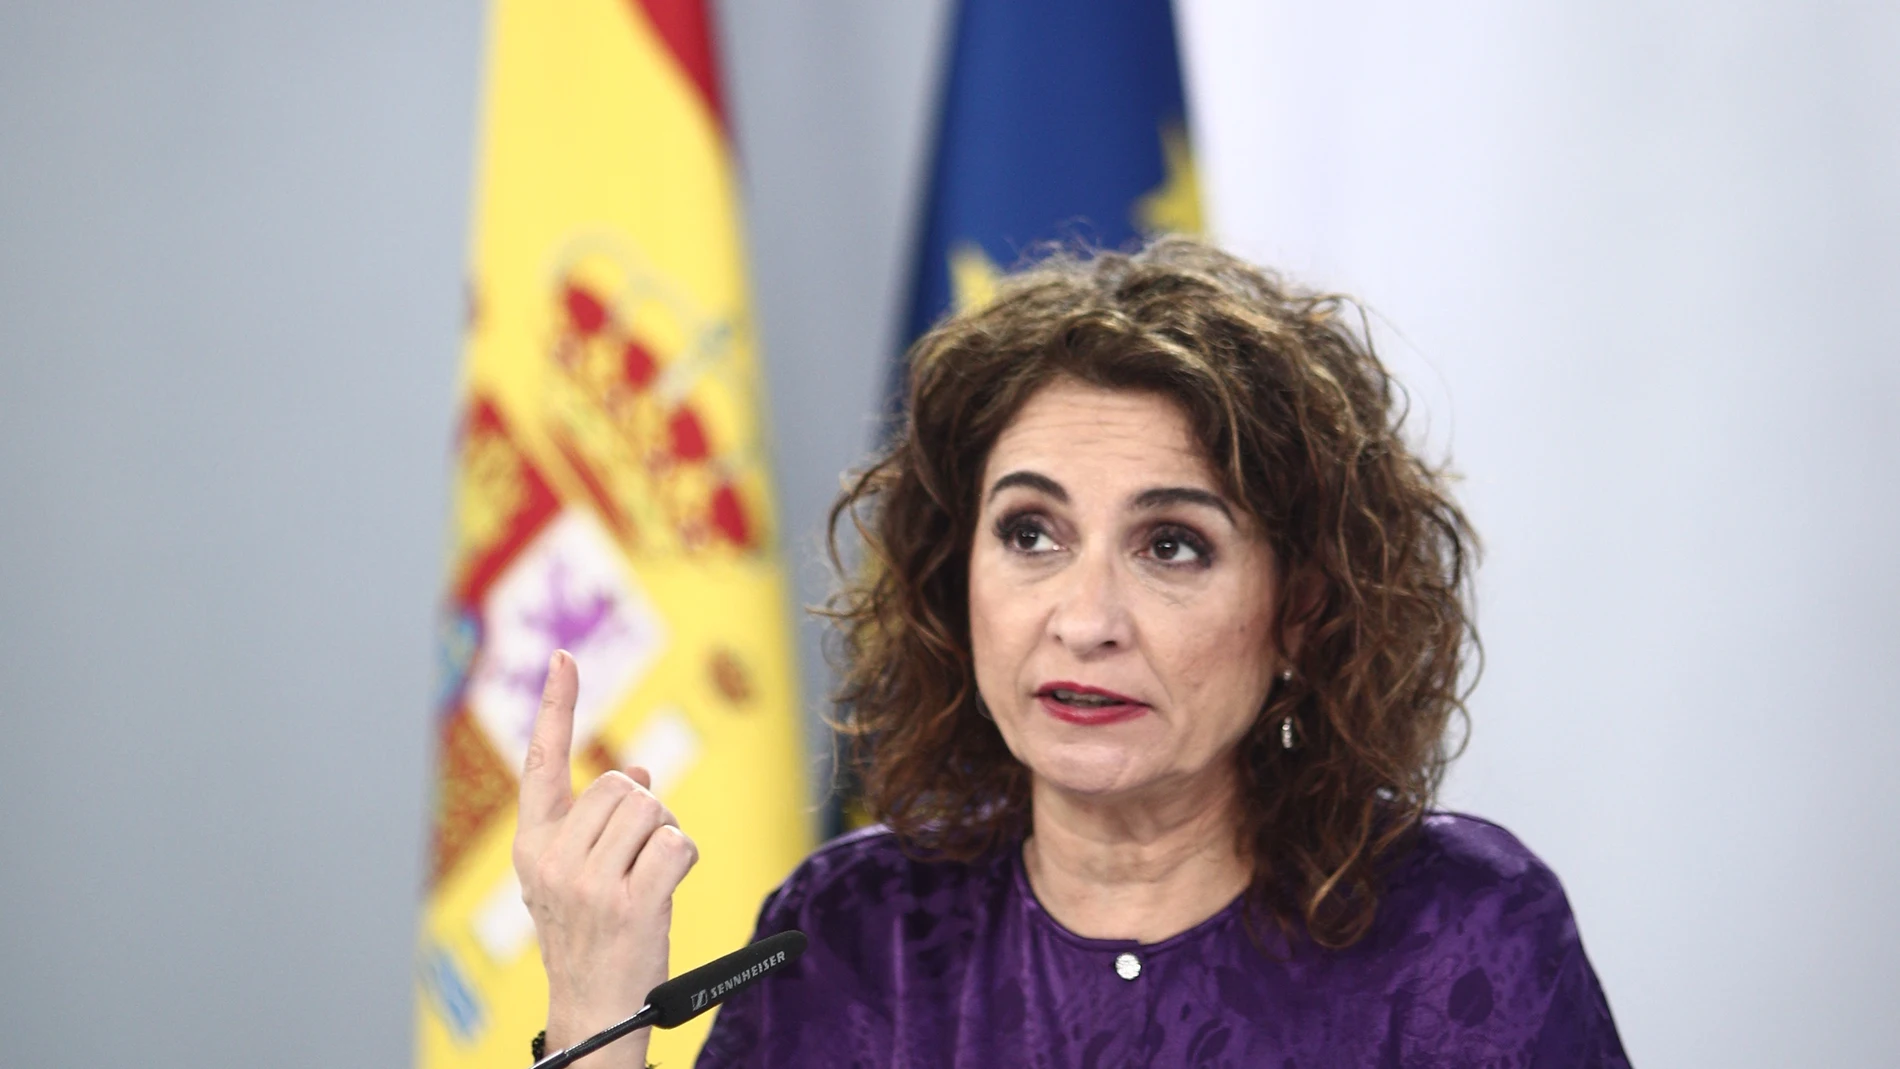 La ministra portavoz y de Hacienda, María Jesús Montero, interviene durante una rueda de prensa posterior al Consejo de Ministros